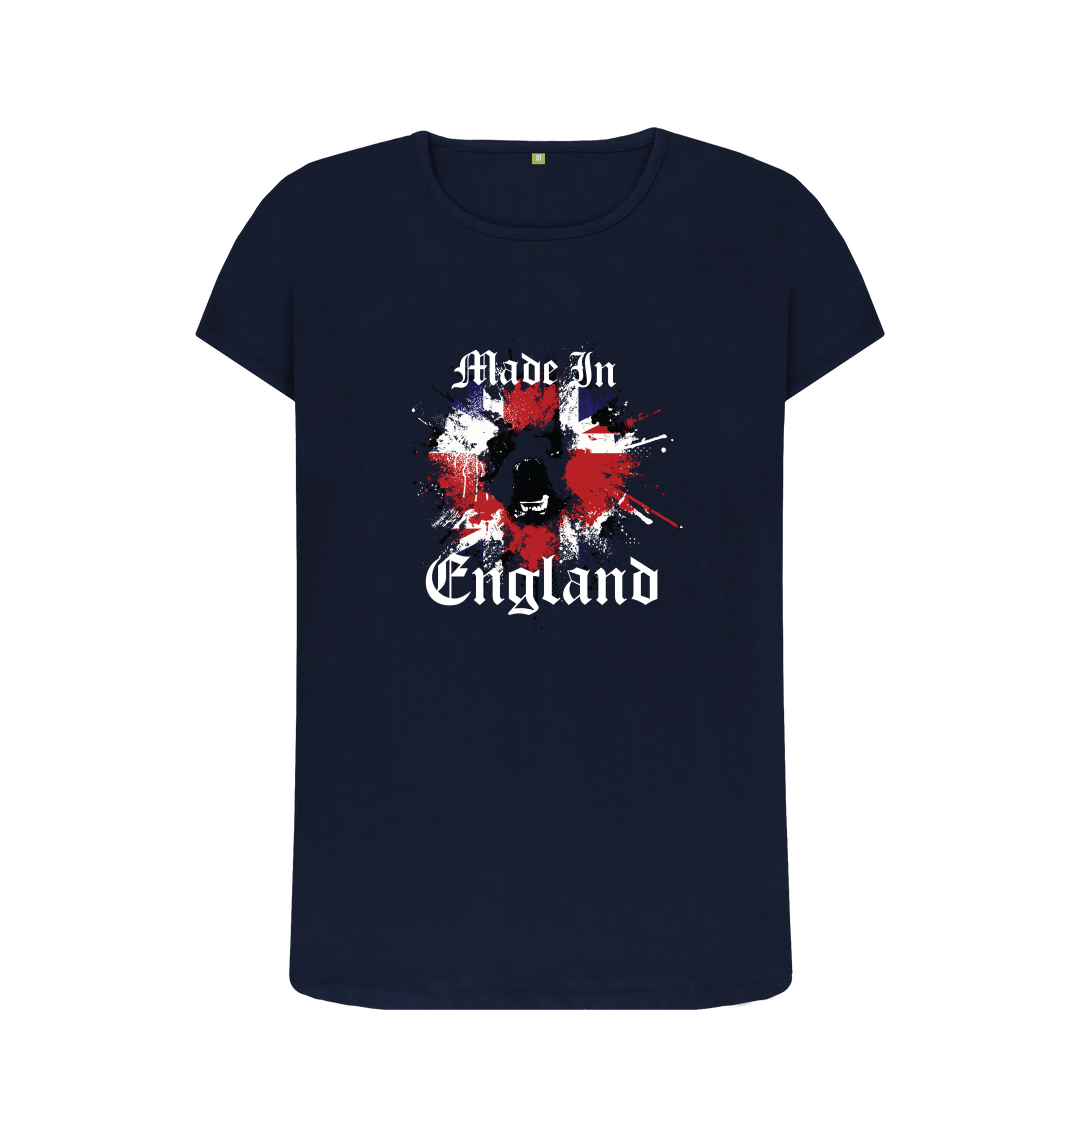 england women's t shirt